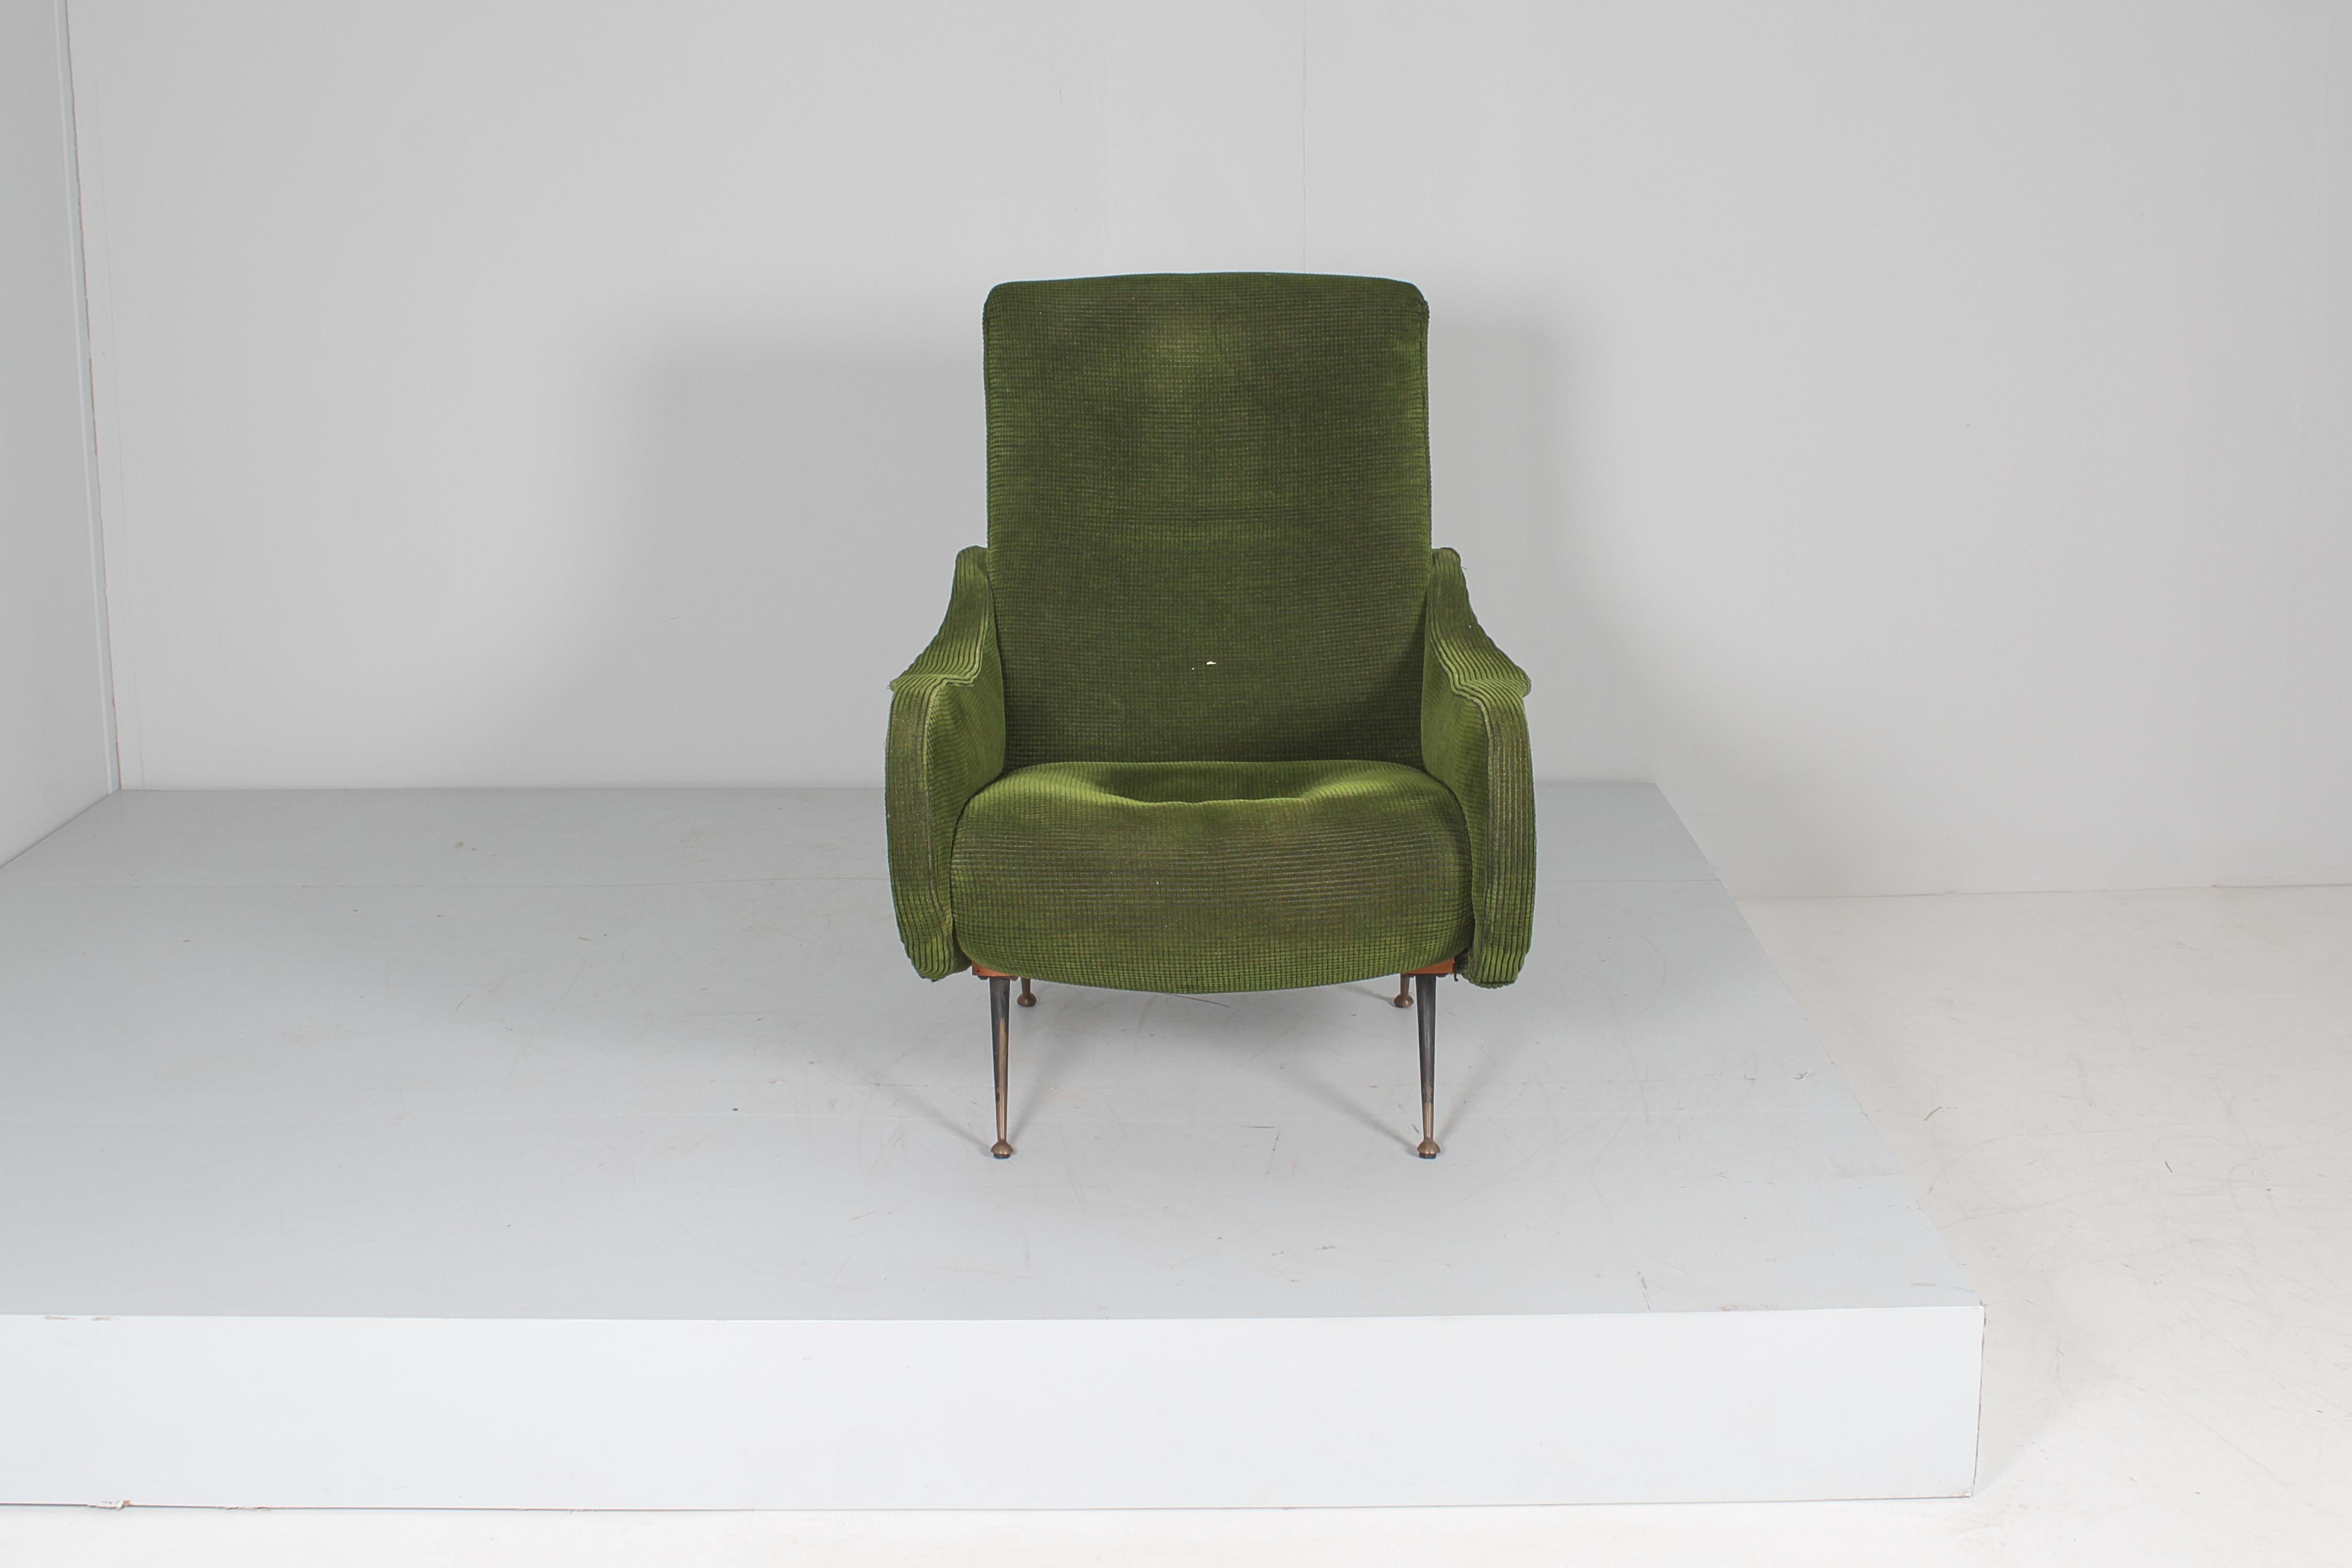 Très beau fauteuil avec structure en bois recouverte de velours vert, avec pieds en métal foncé et embouts en laiton. Production italienne dans le style du modèle 